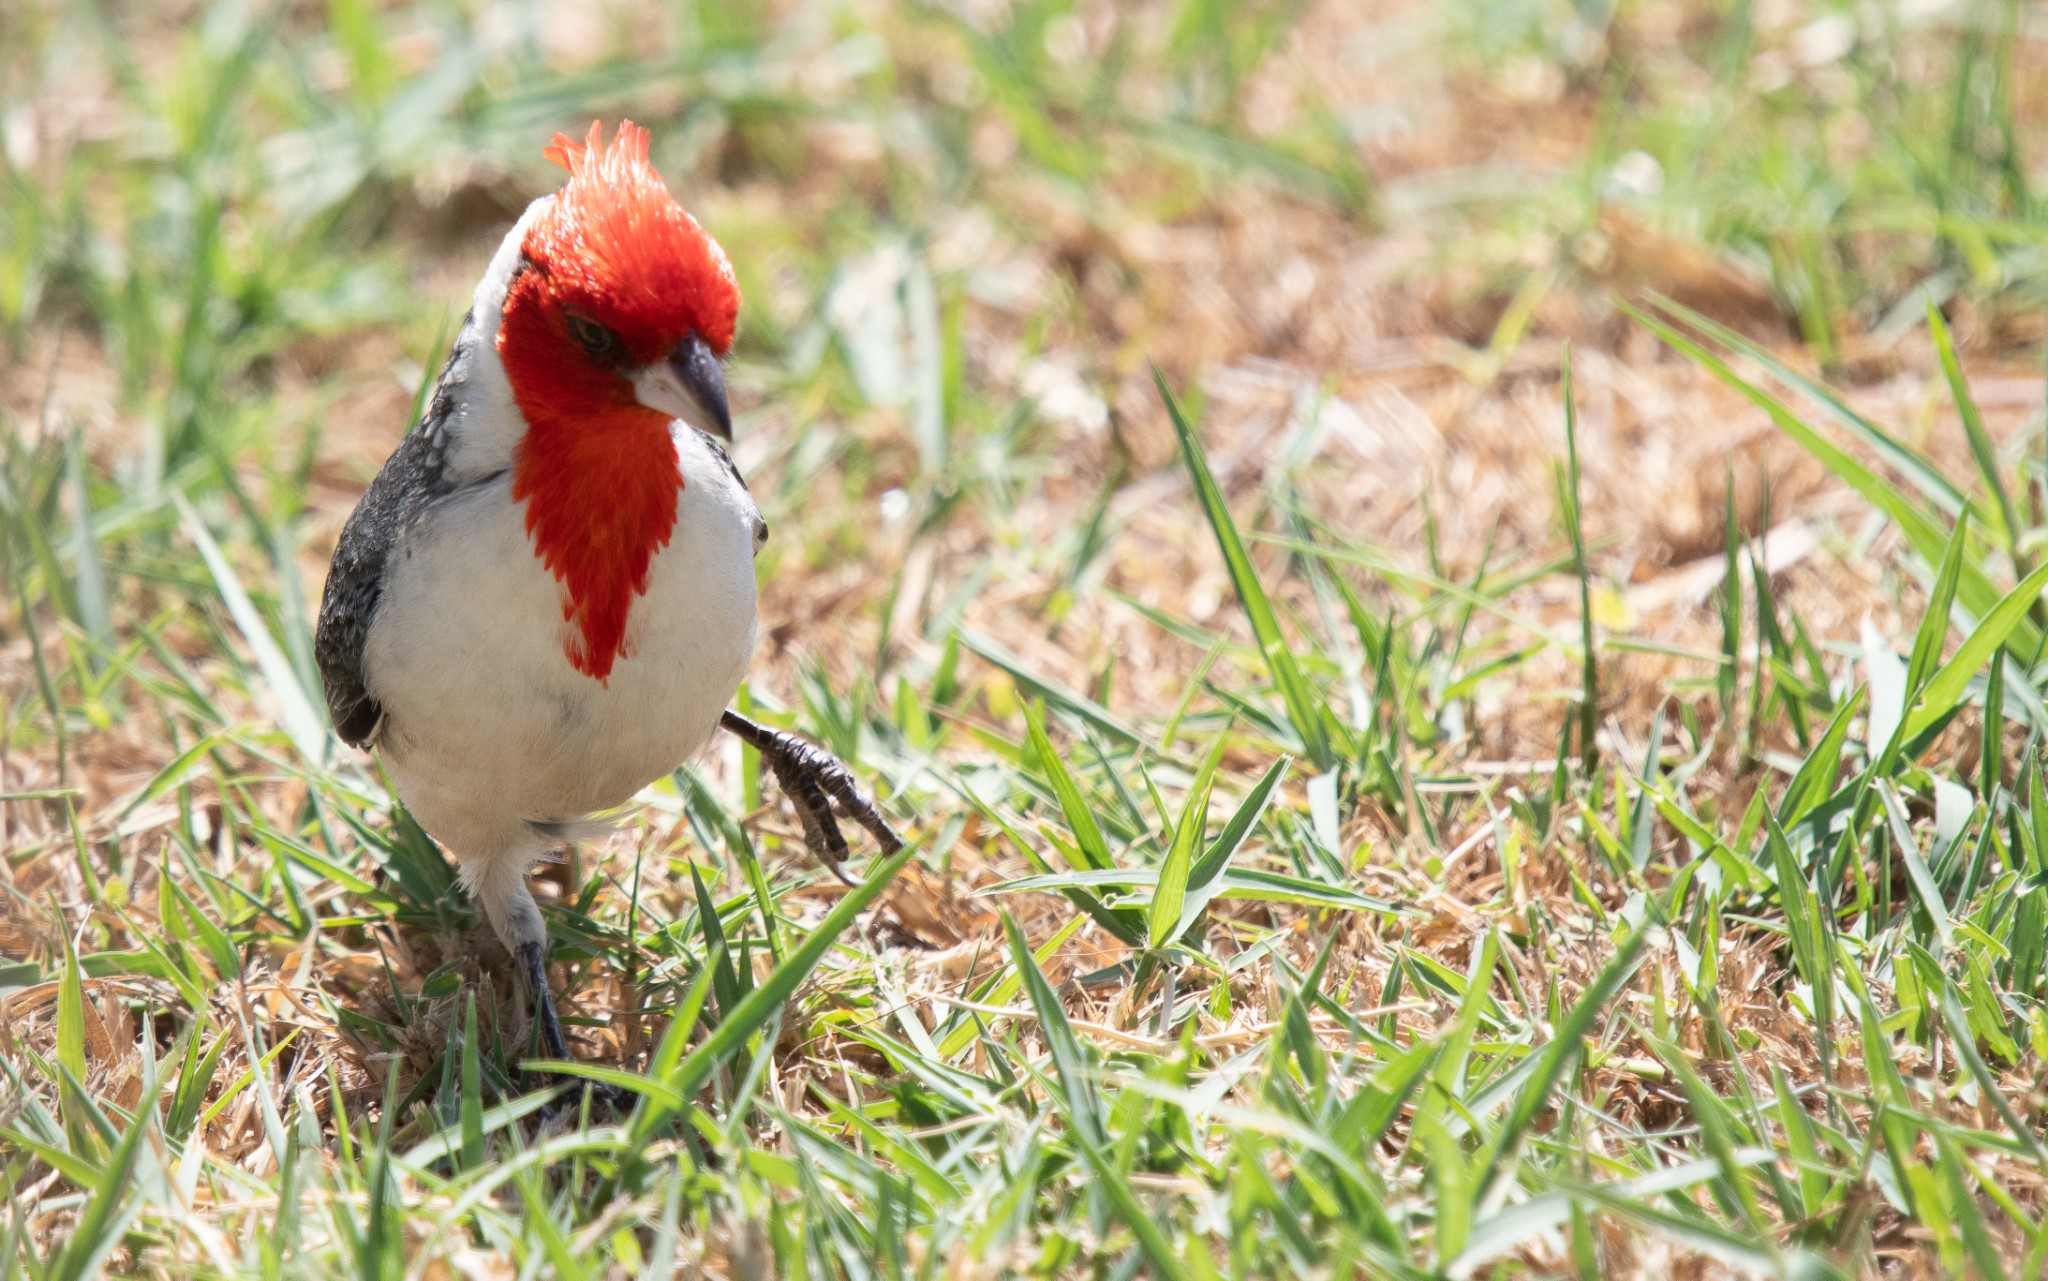 Image of a Cardinal bird.